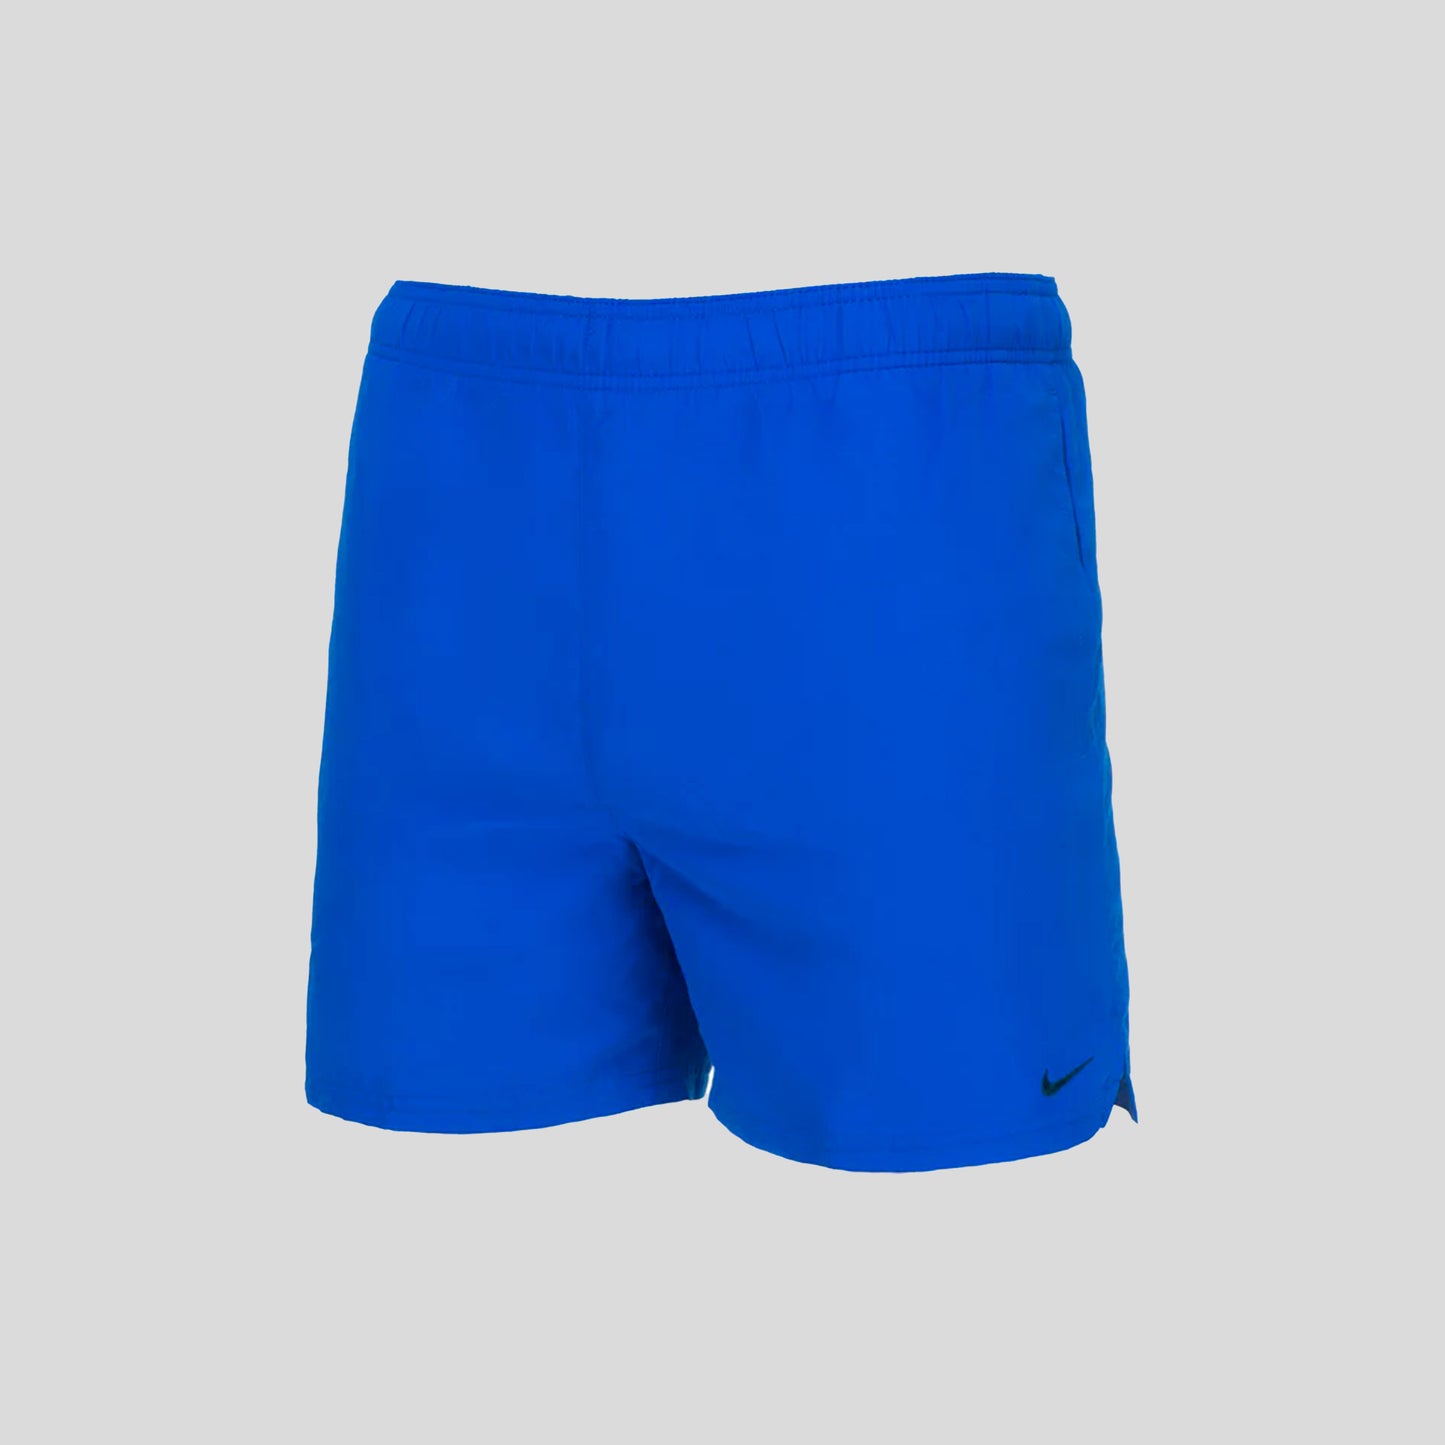 Short Para Caballero Nike Azul